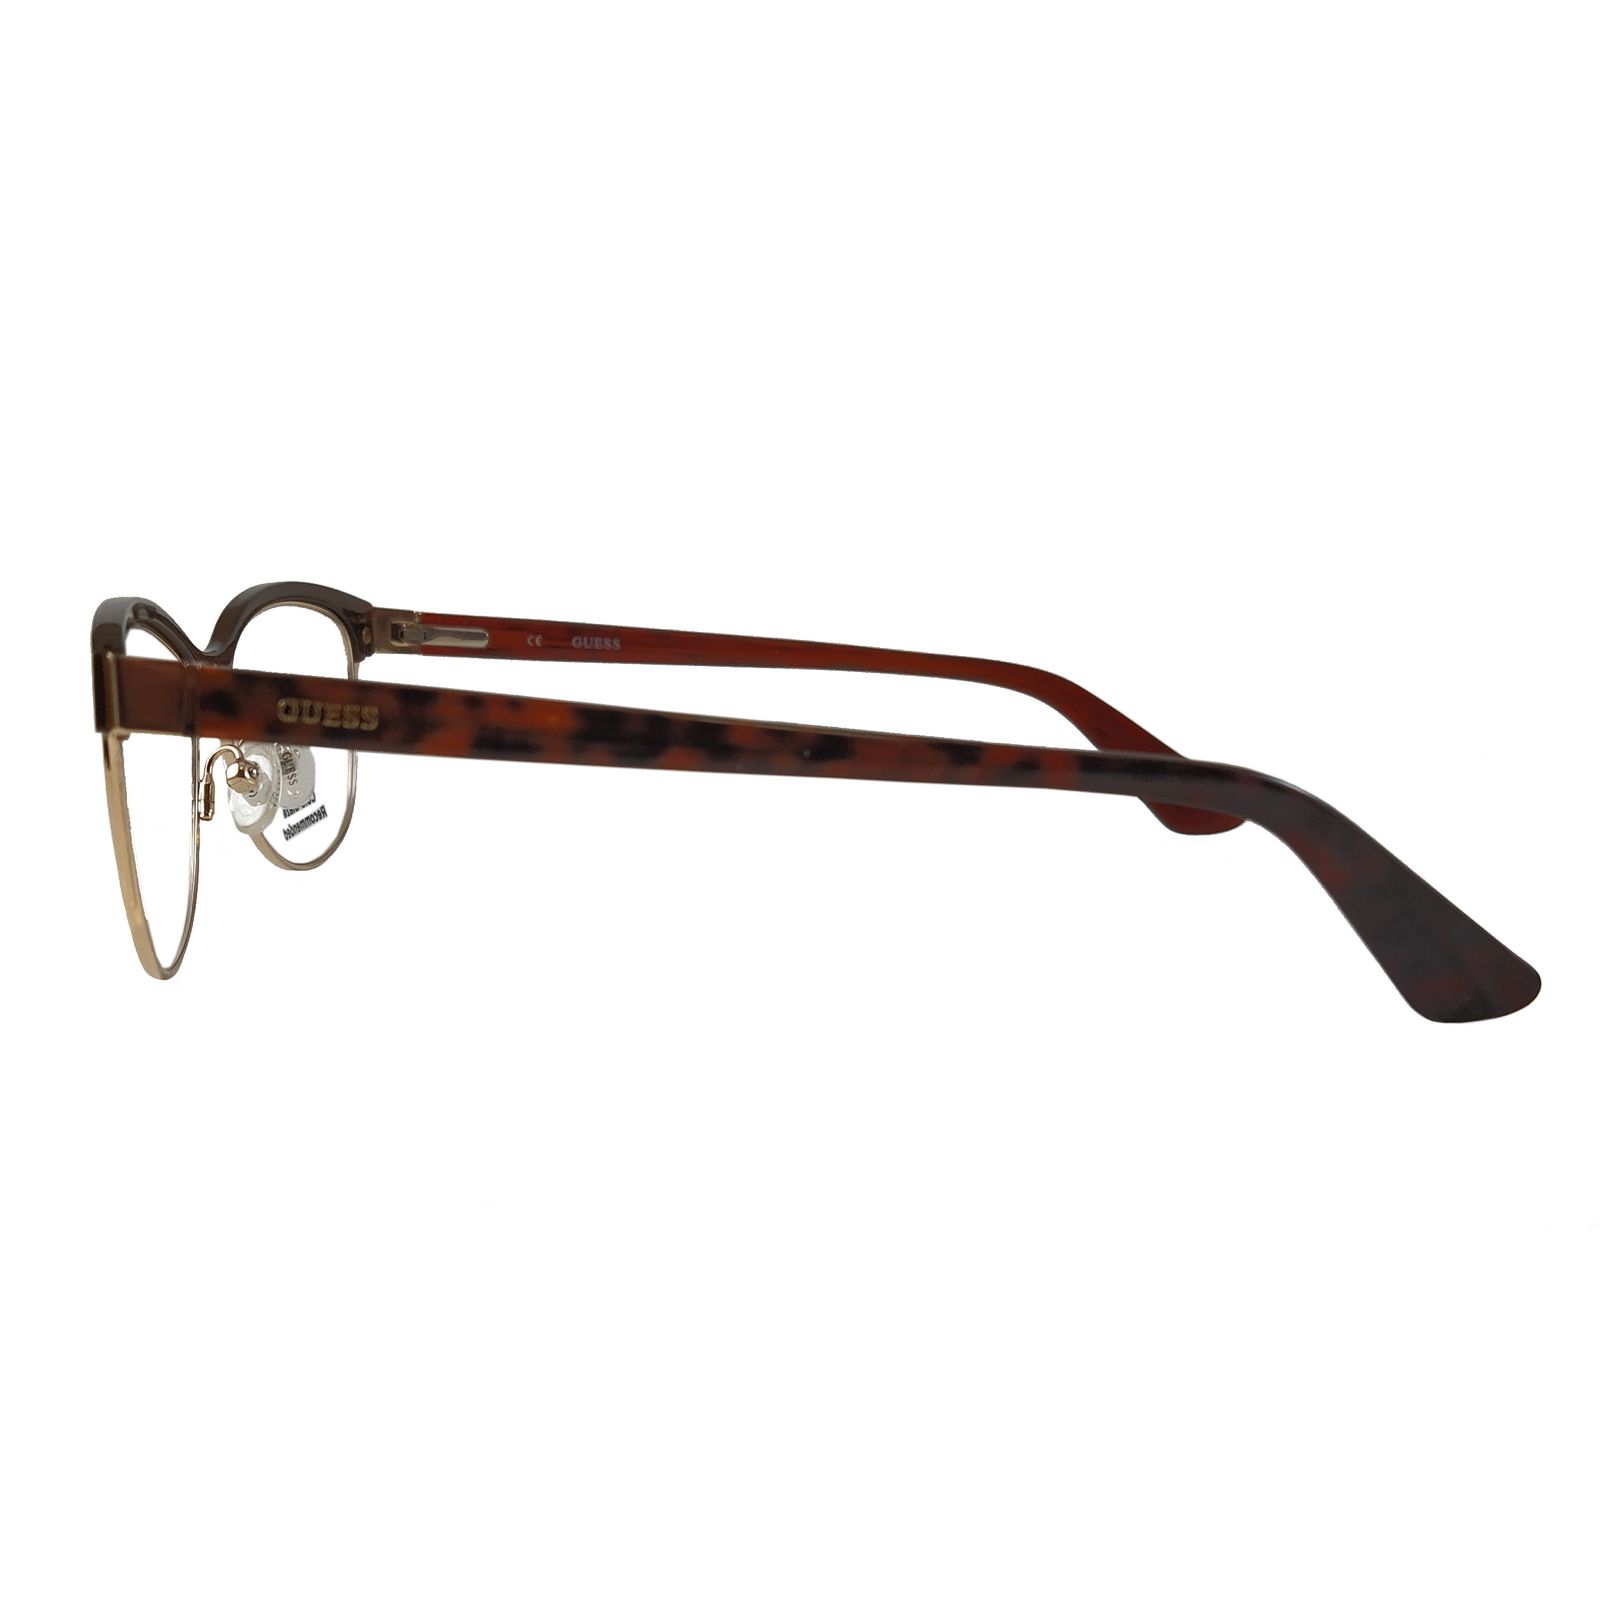 فریم عینک طبی زنانه گس مدل GU252304852 -  - 3